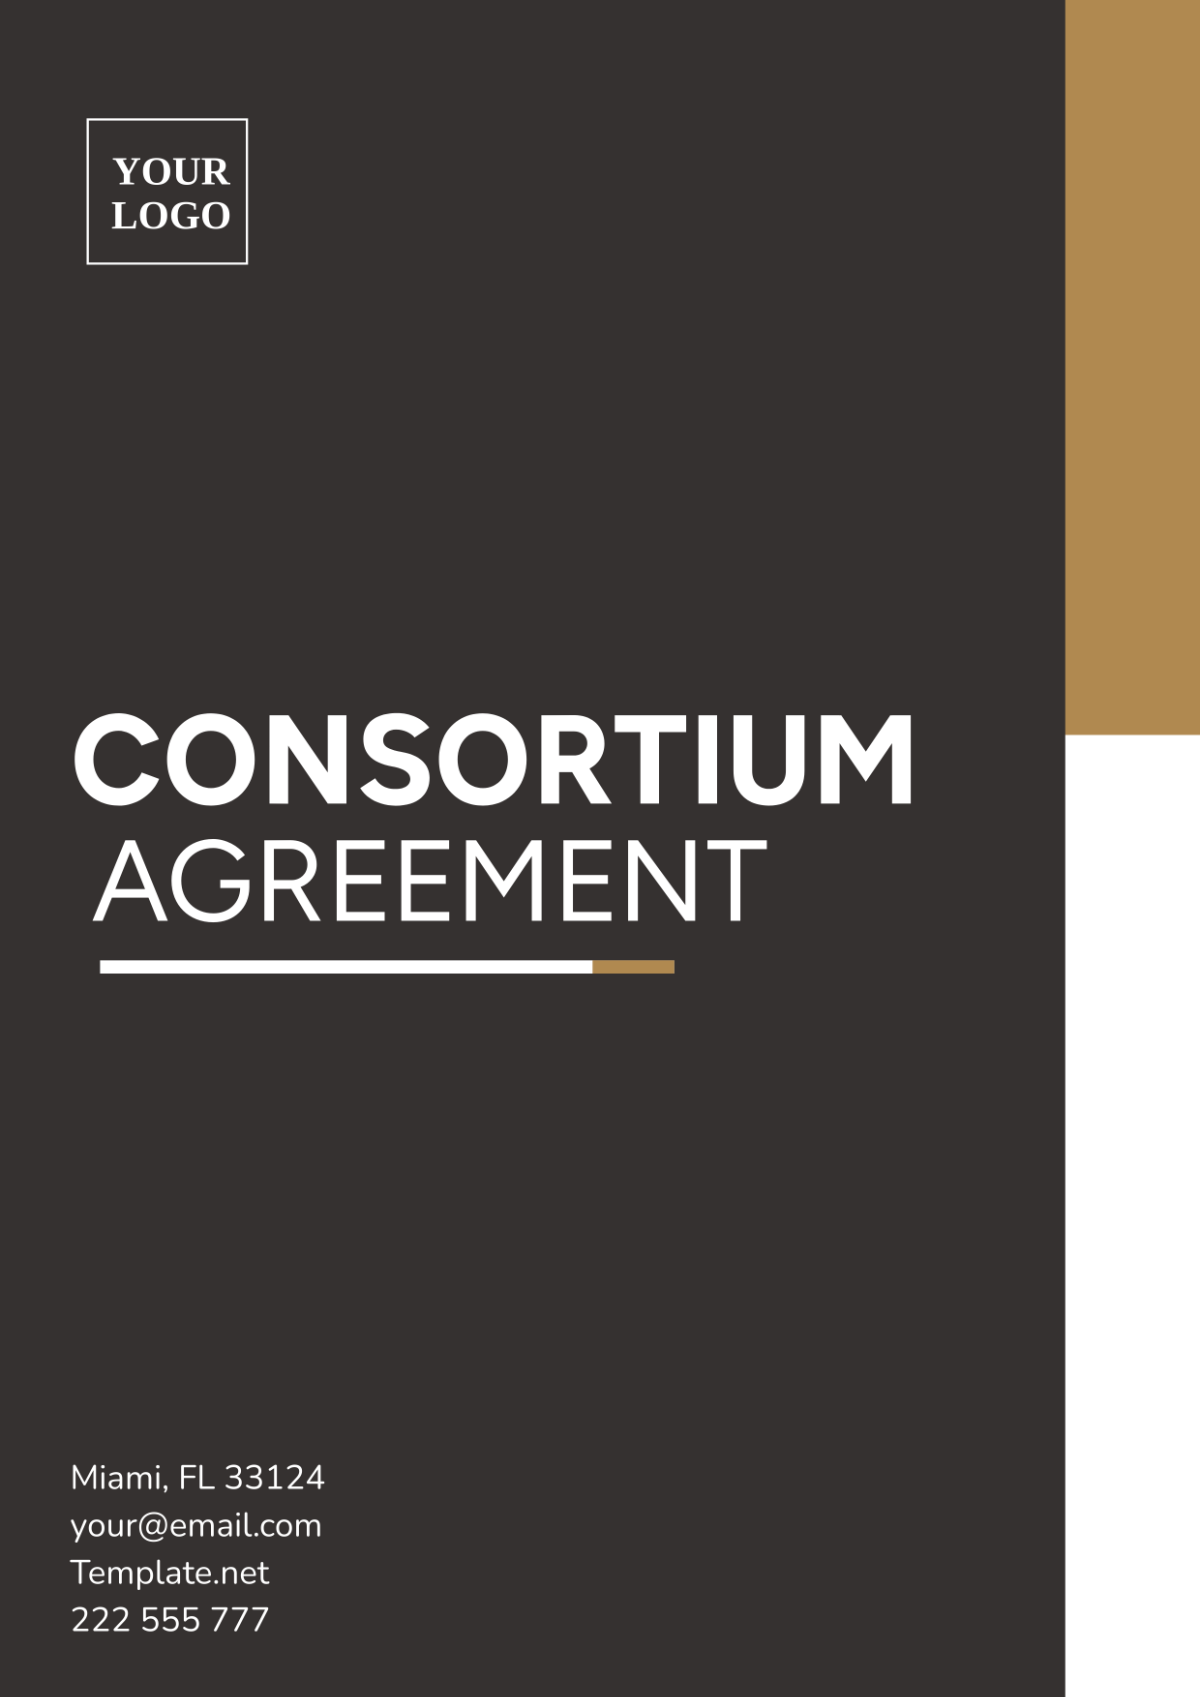 Consortium Agreement Template